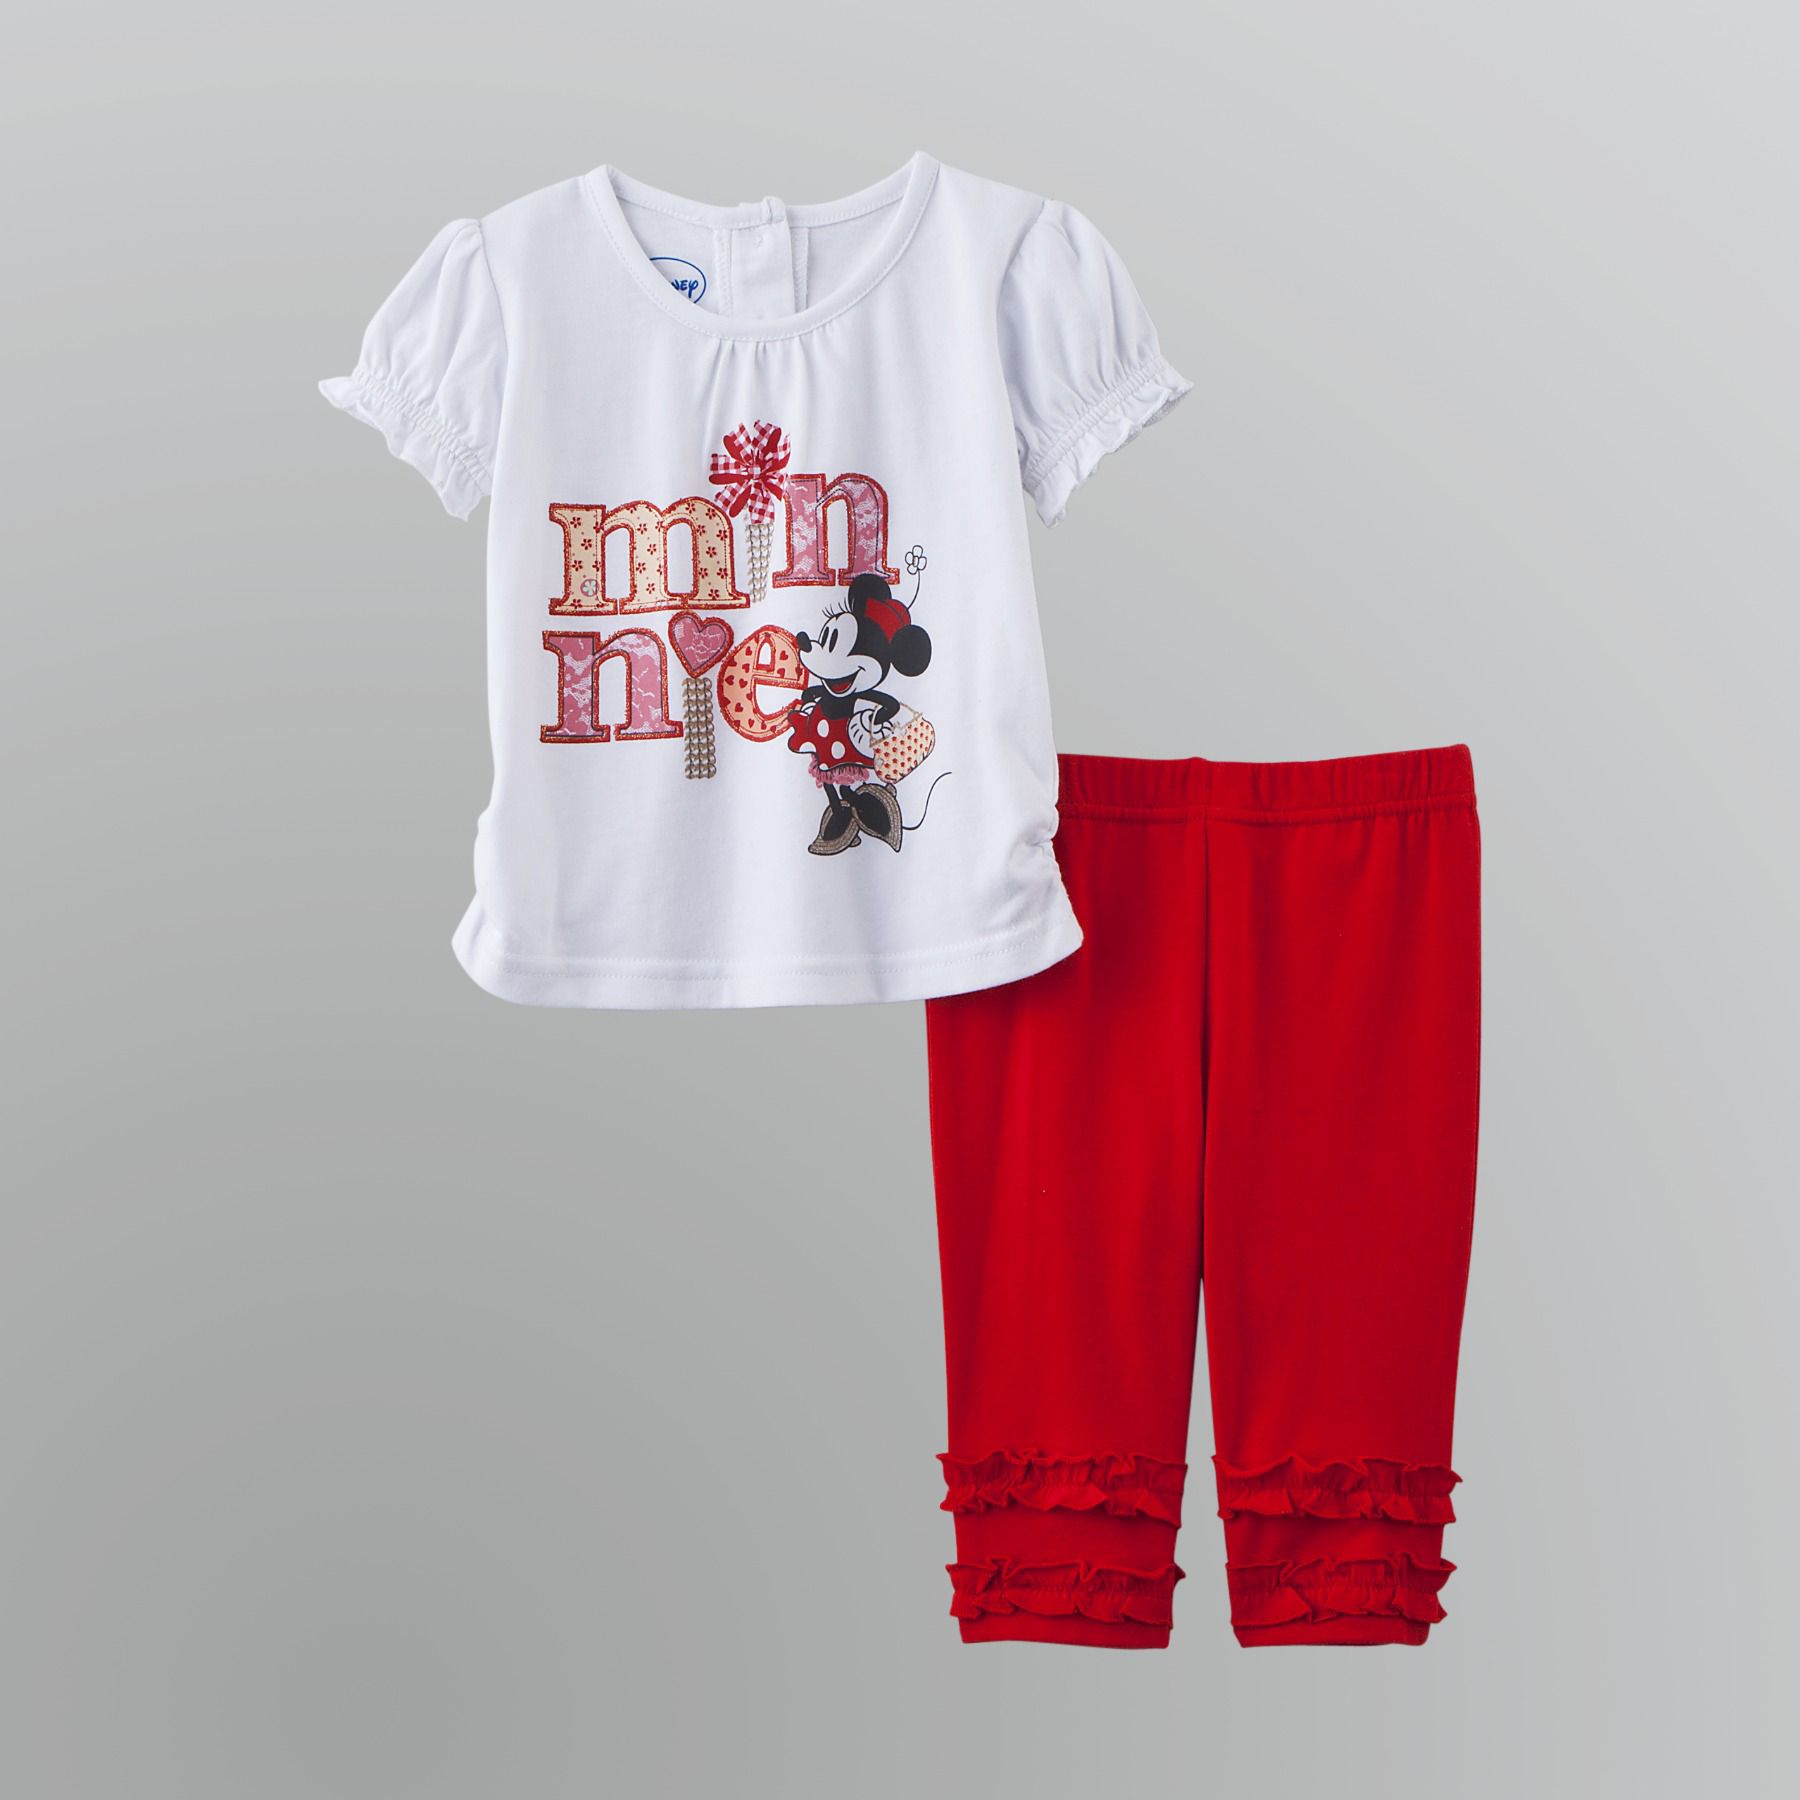 Disney Infant & Toddler Girl's Leggings Set - Minnie